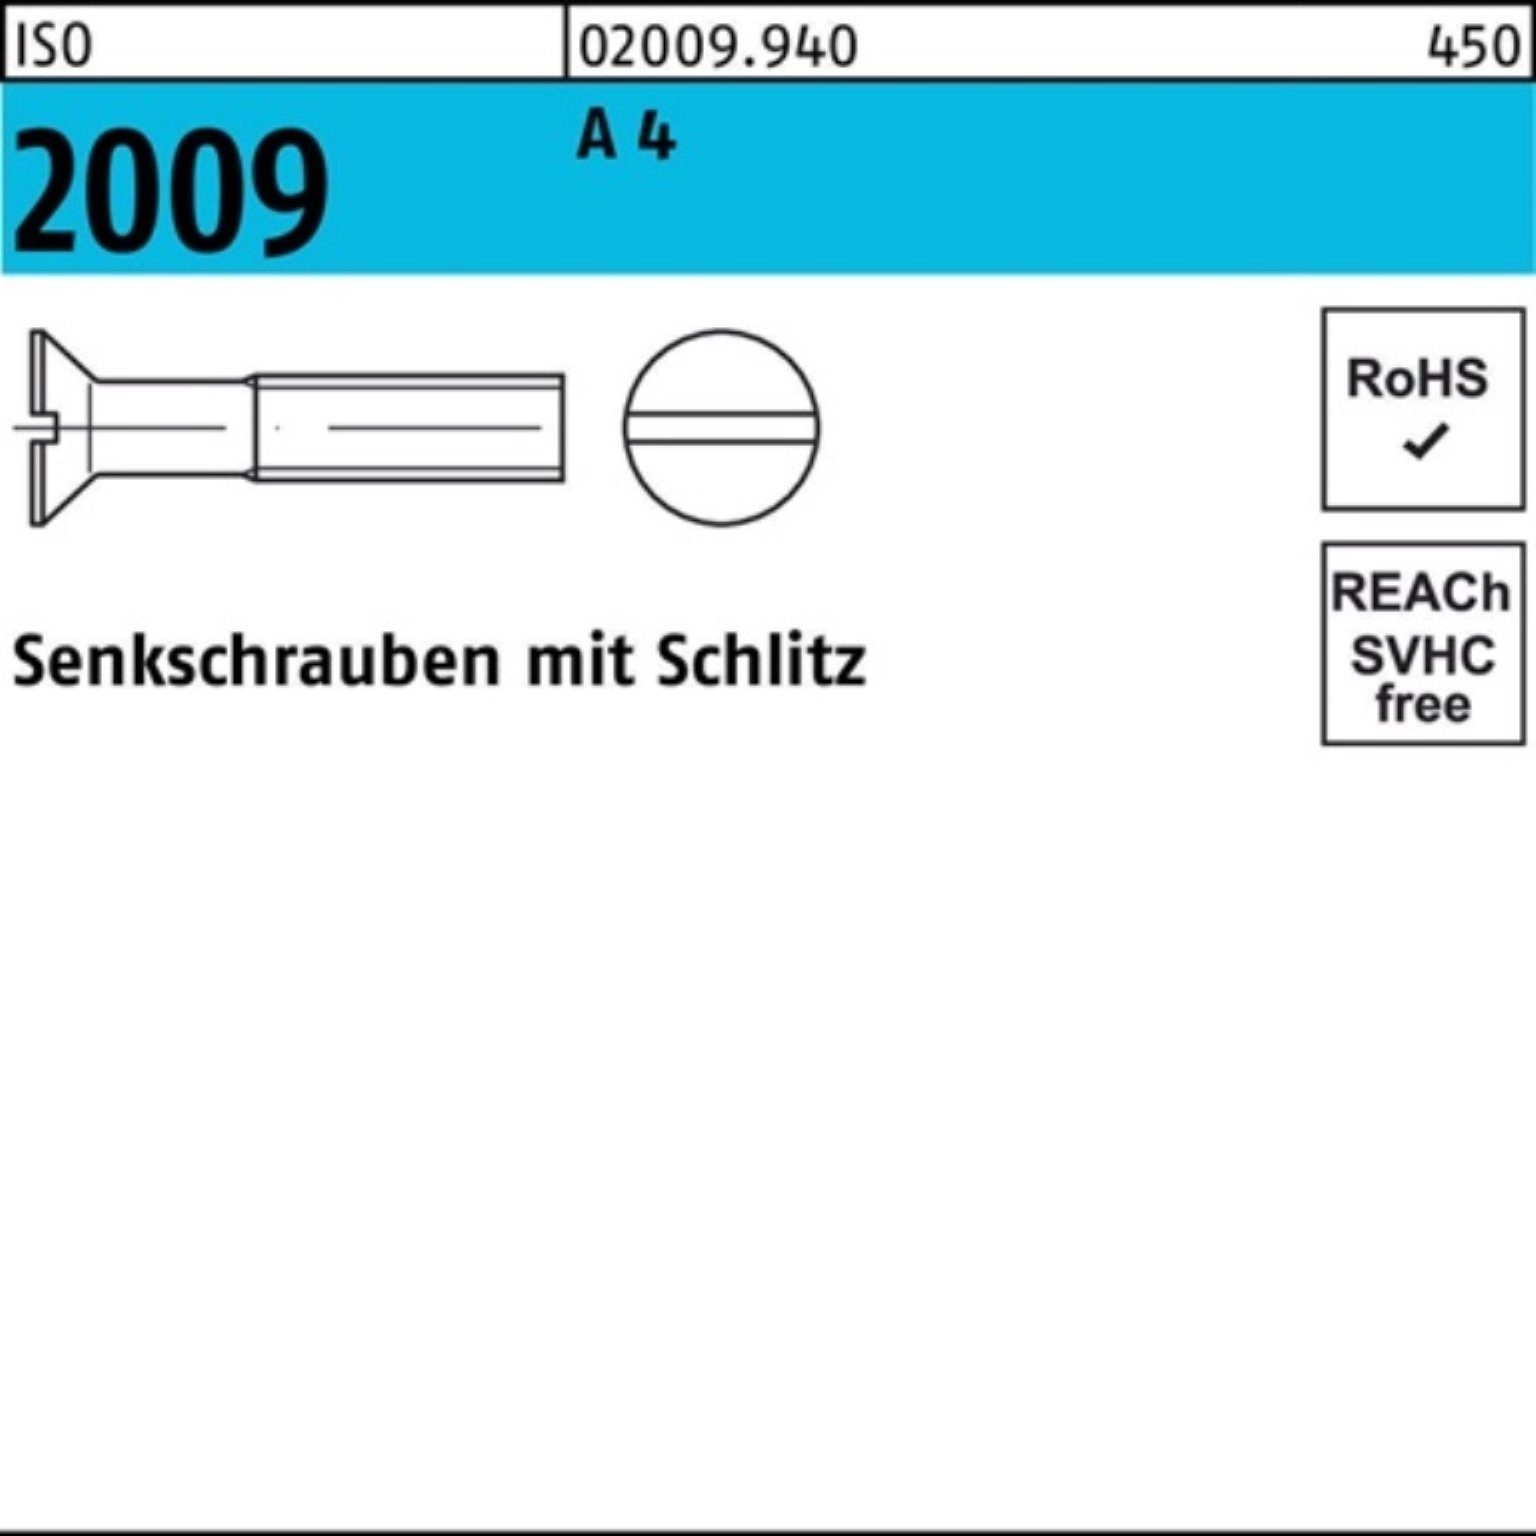 A 4 Reyher Senkschraube Schlitz 2 1000er ISO ISO 12 Senkschraube Stück 1000 M3x 2009 Pack